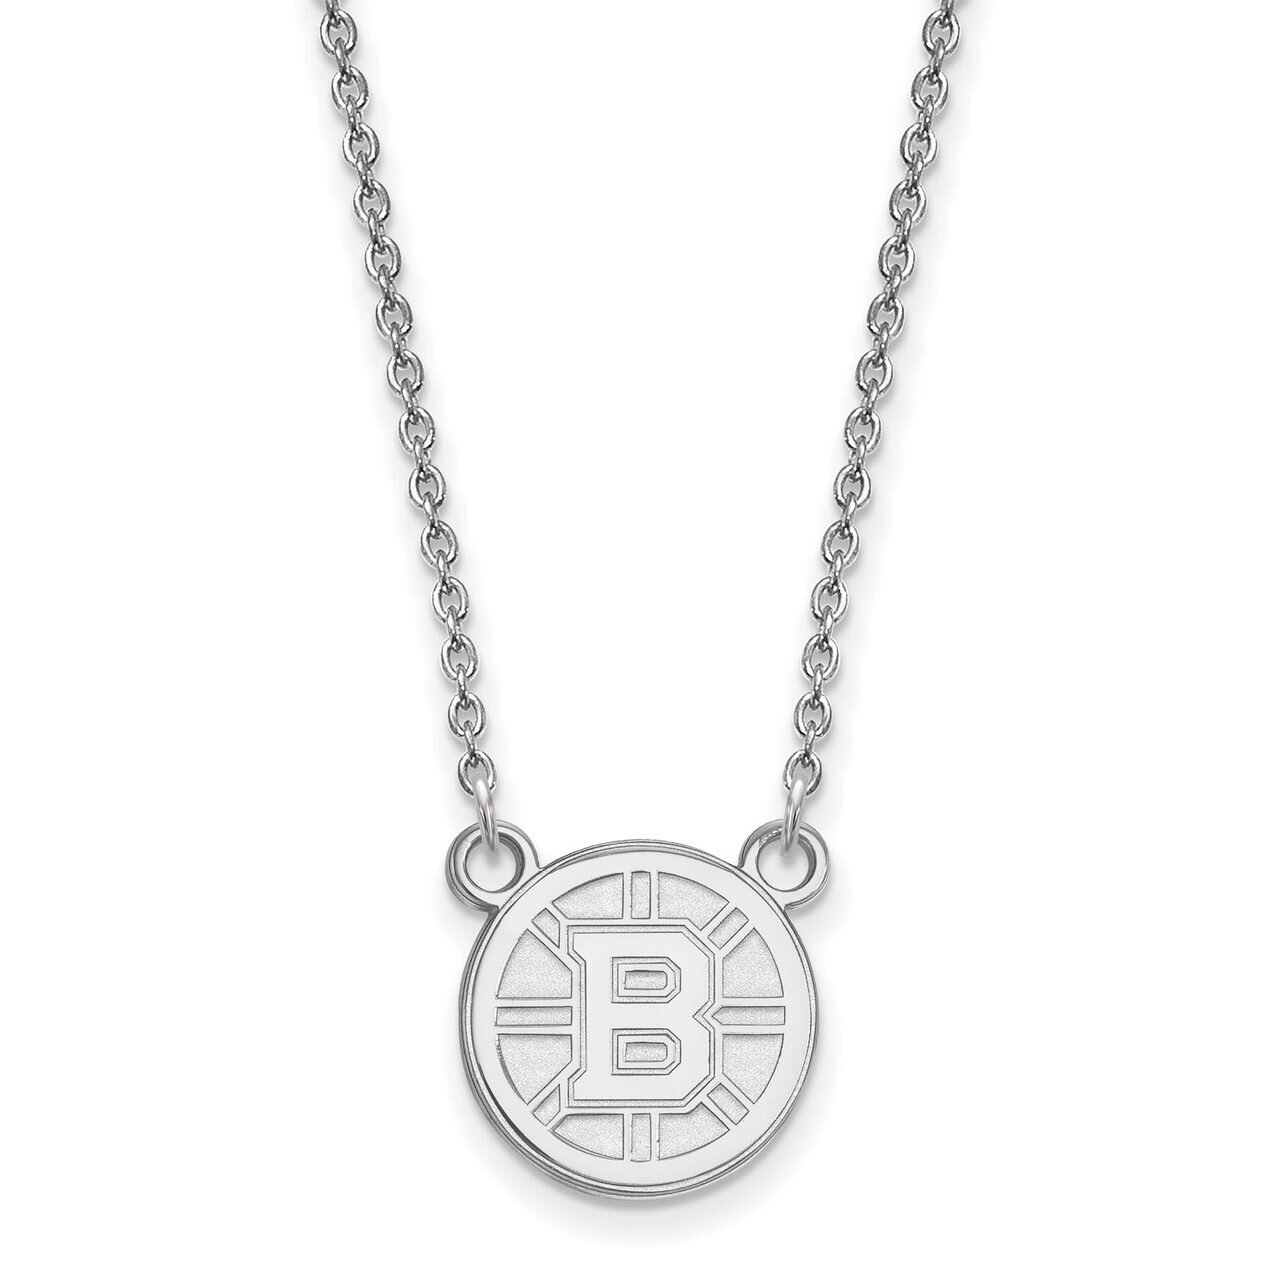 Boston Bruins Small Pendant with Chain Necklace 14k White Gold 4W015BRI-18